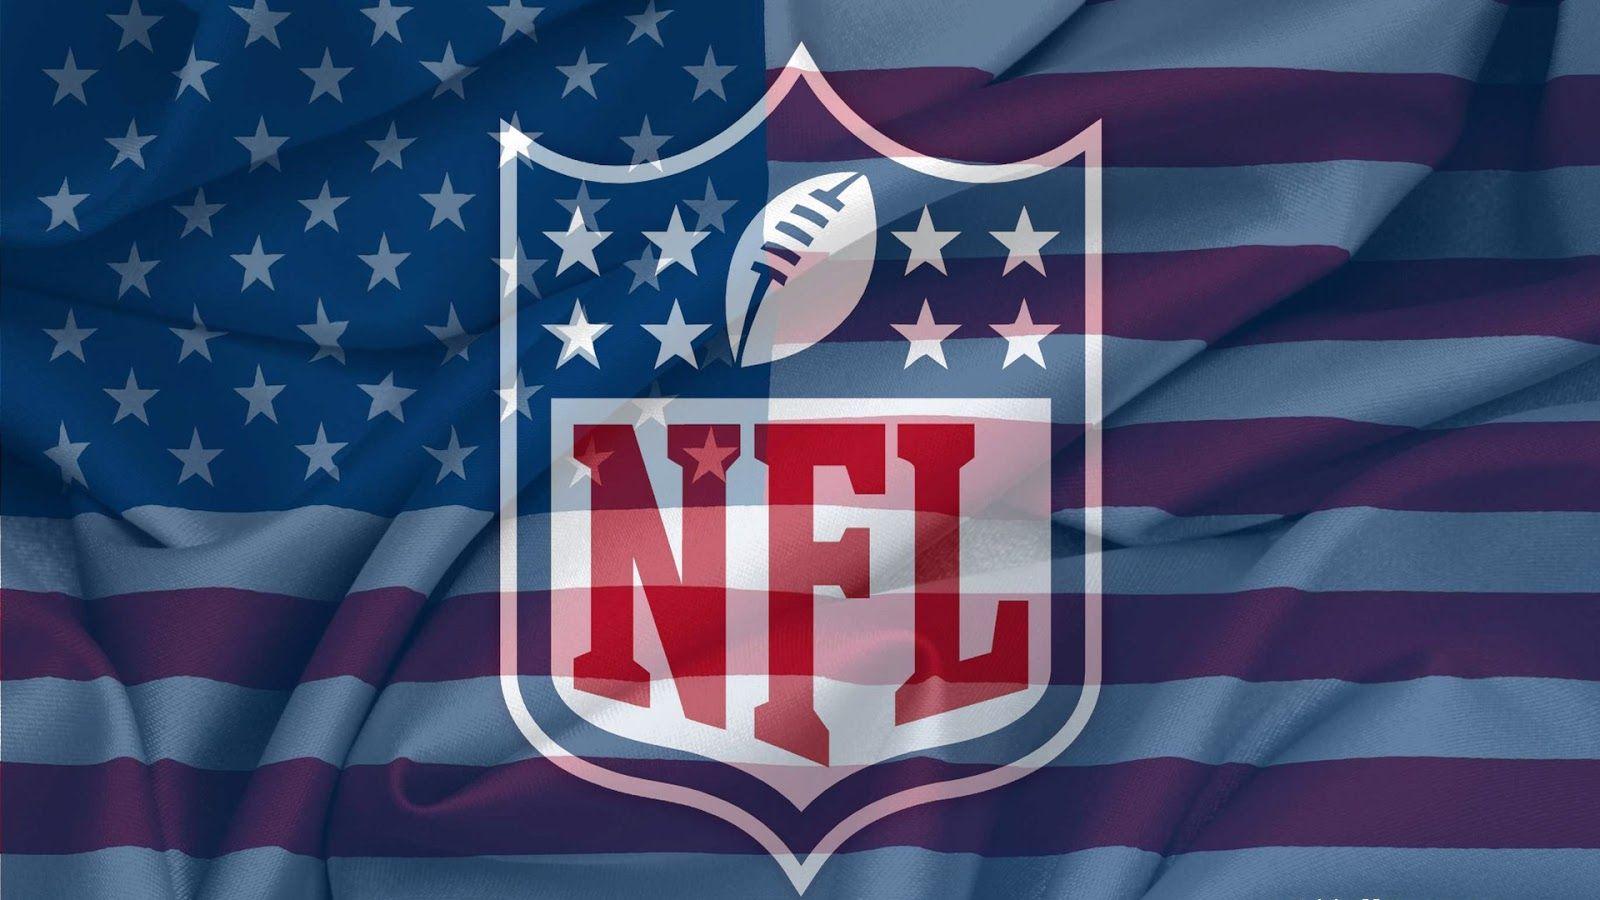 National Football League (NFL) all 32 teams!